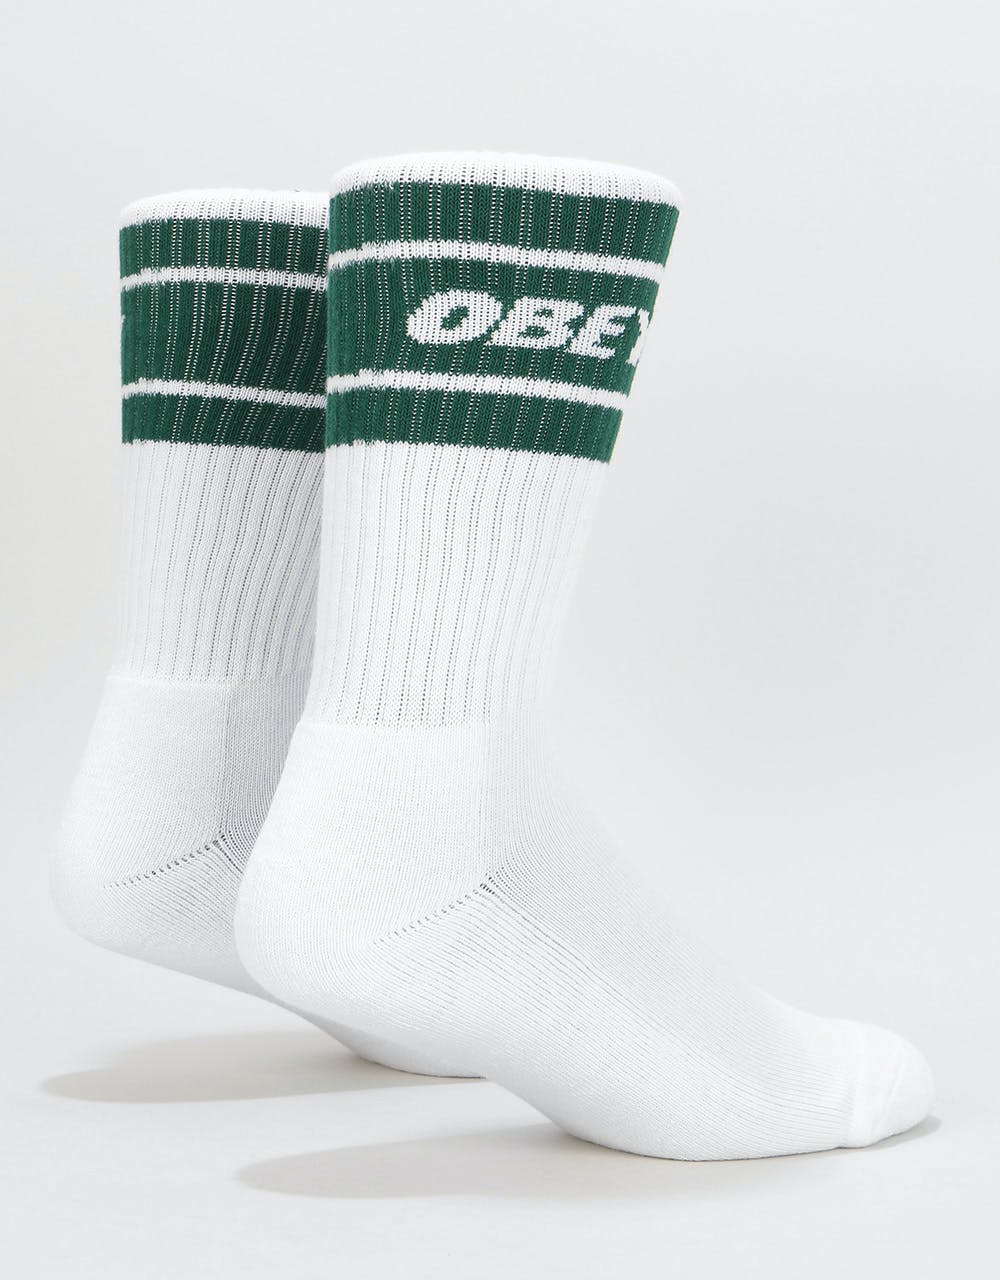 Obey Cooper II Socks - White/Deep Teal